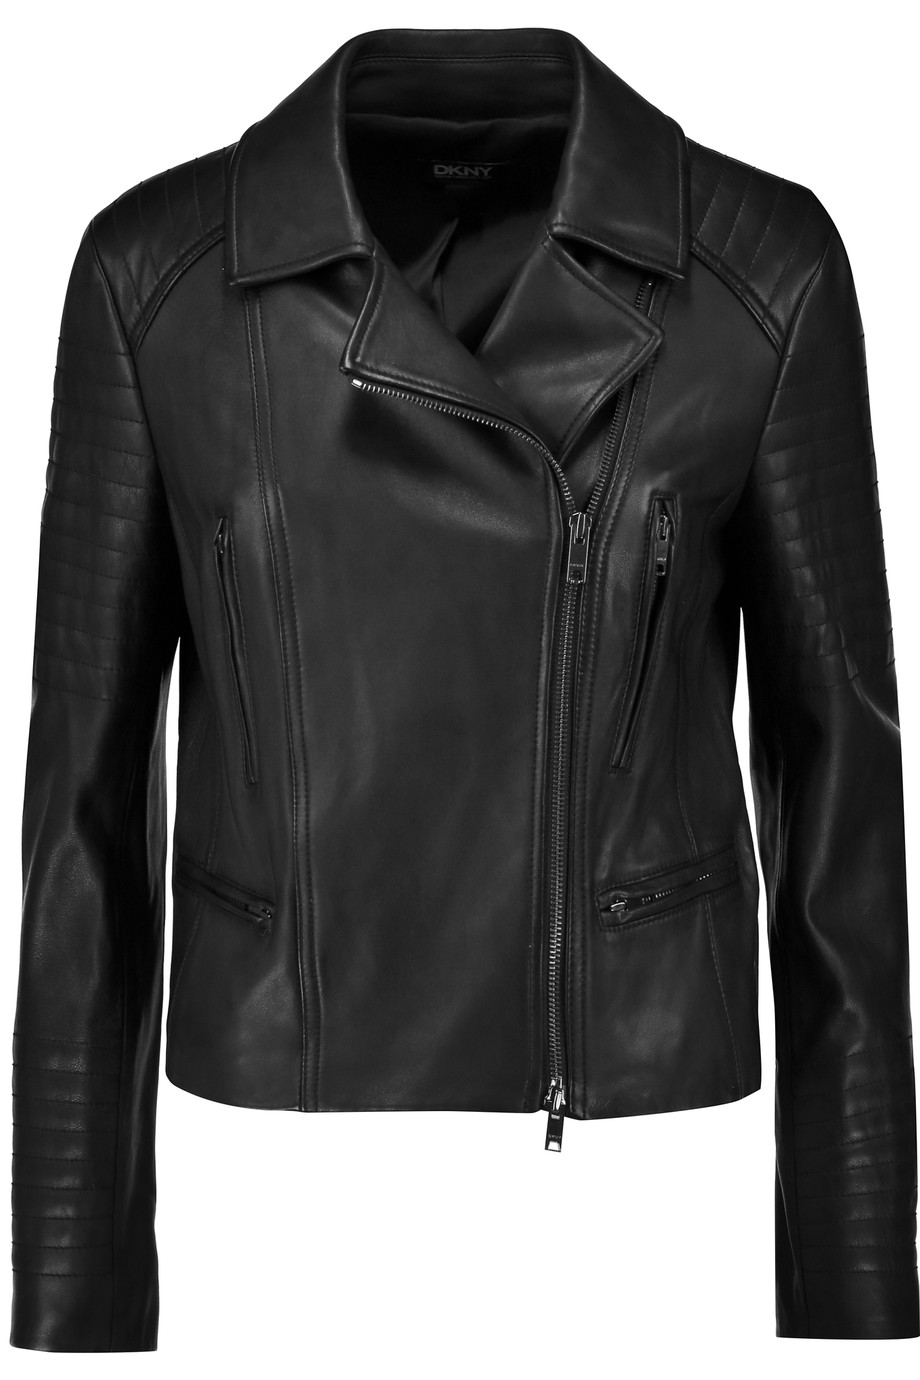 Dkny Leather Biker Jacket | ModeSens